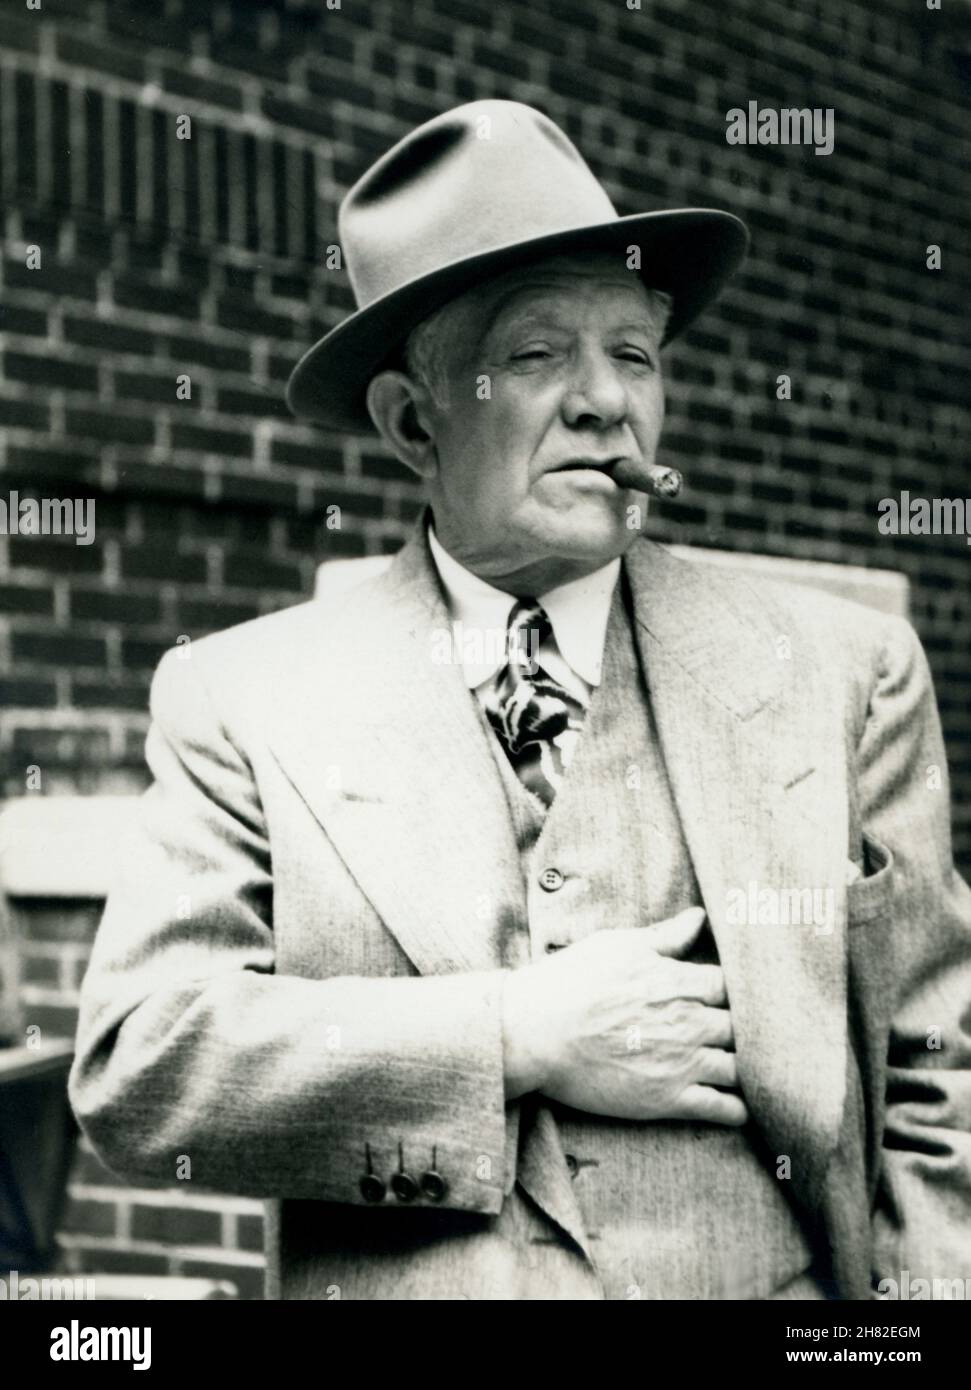 Alter Mann in einer städtischen Umgebung mit Zigarre, Fedora-Hut und Anzug, um 1950. Stockfoto